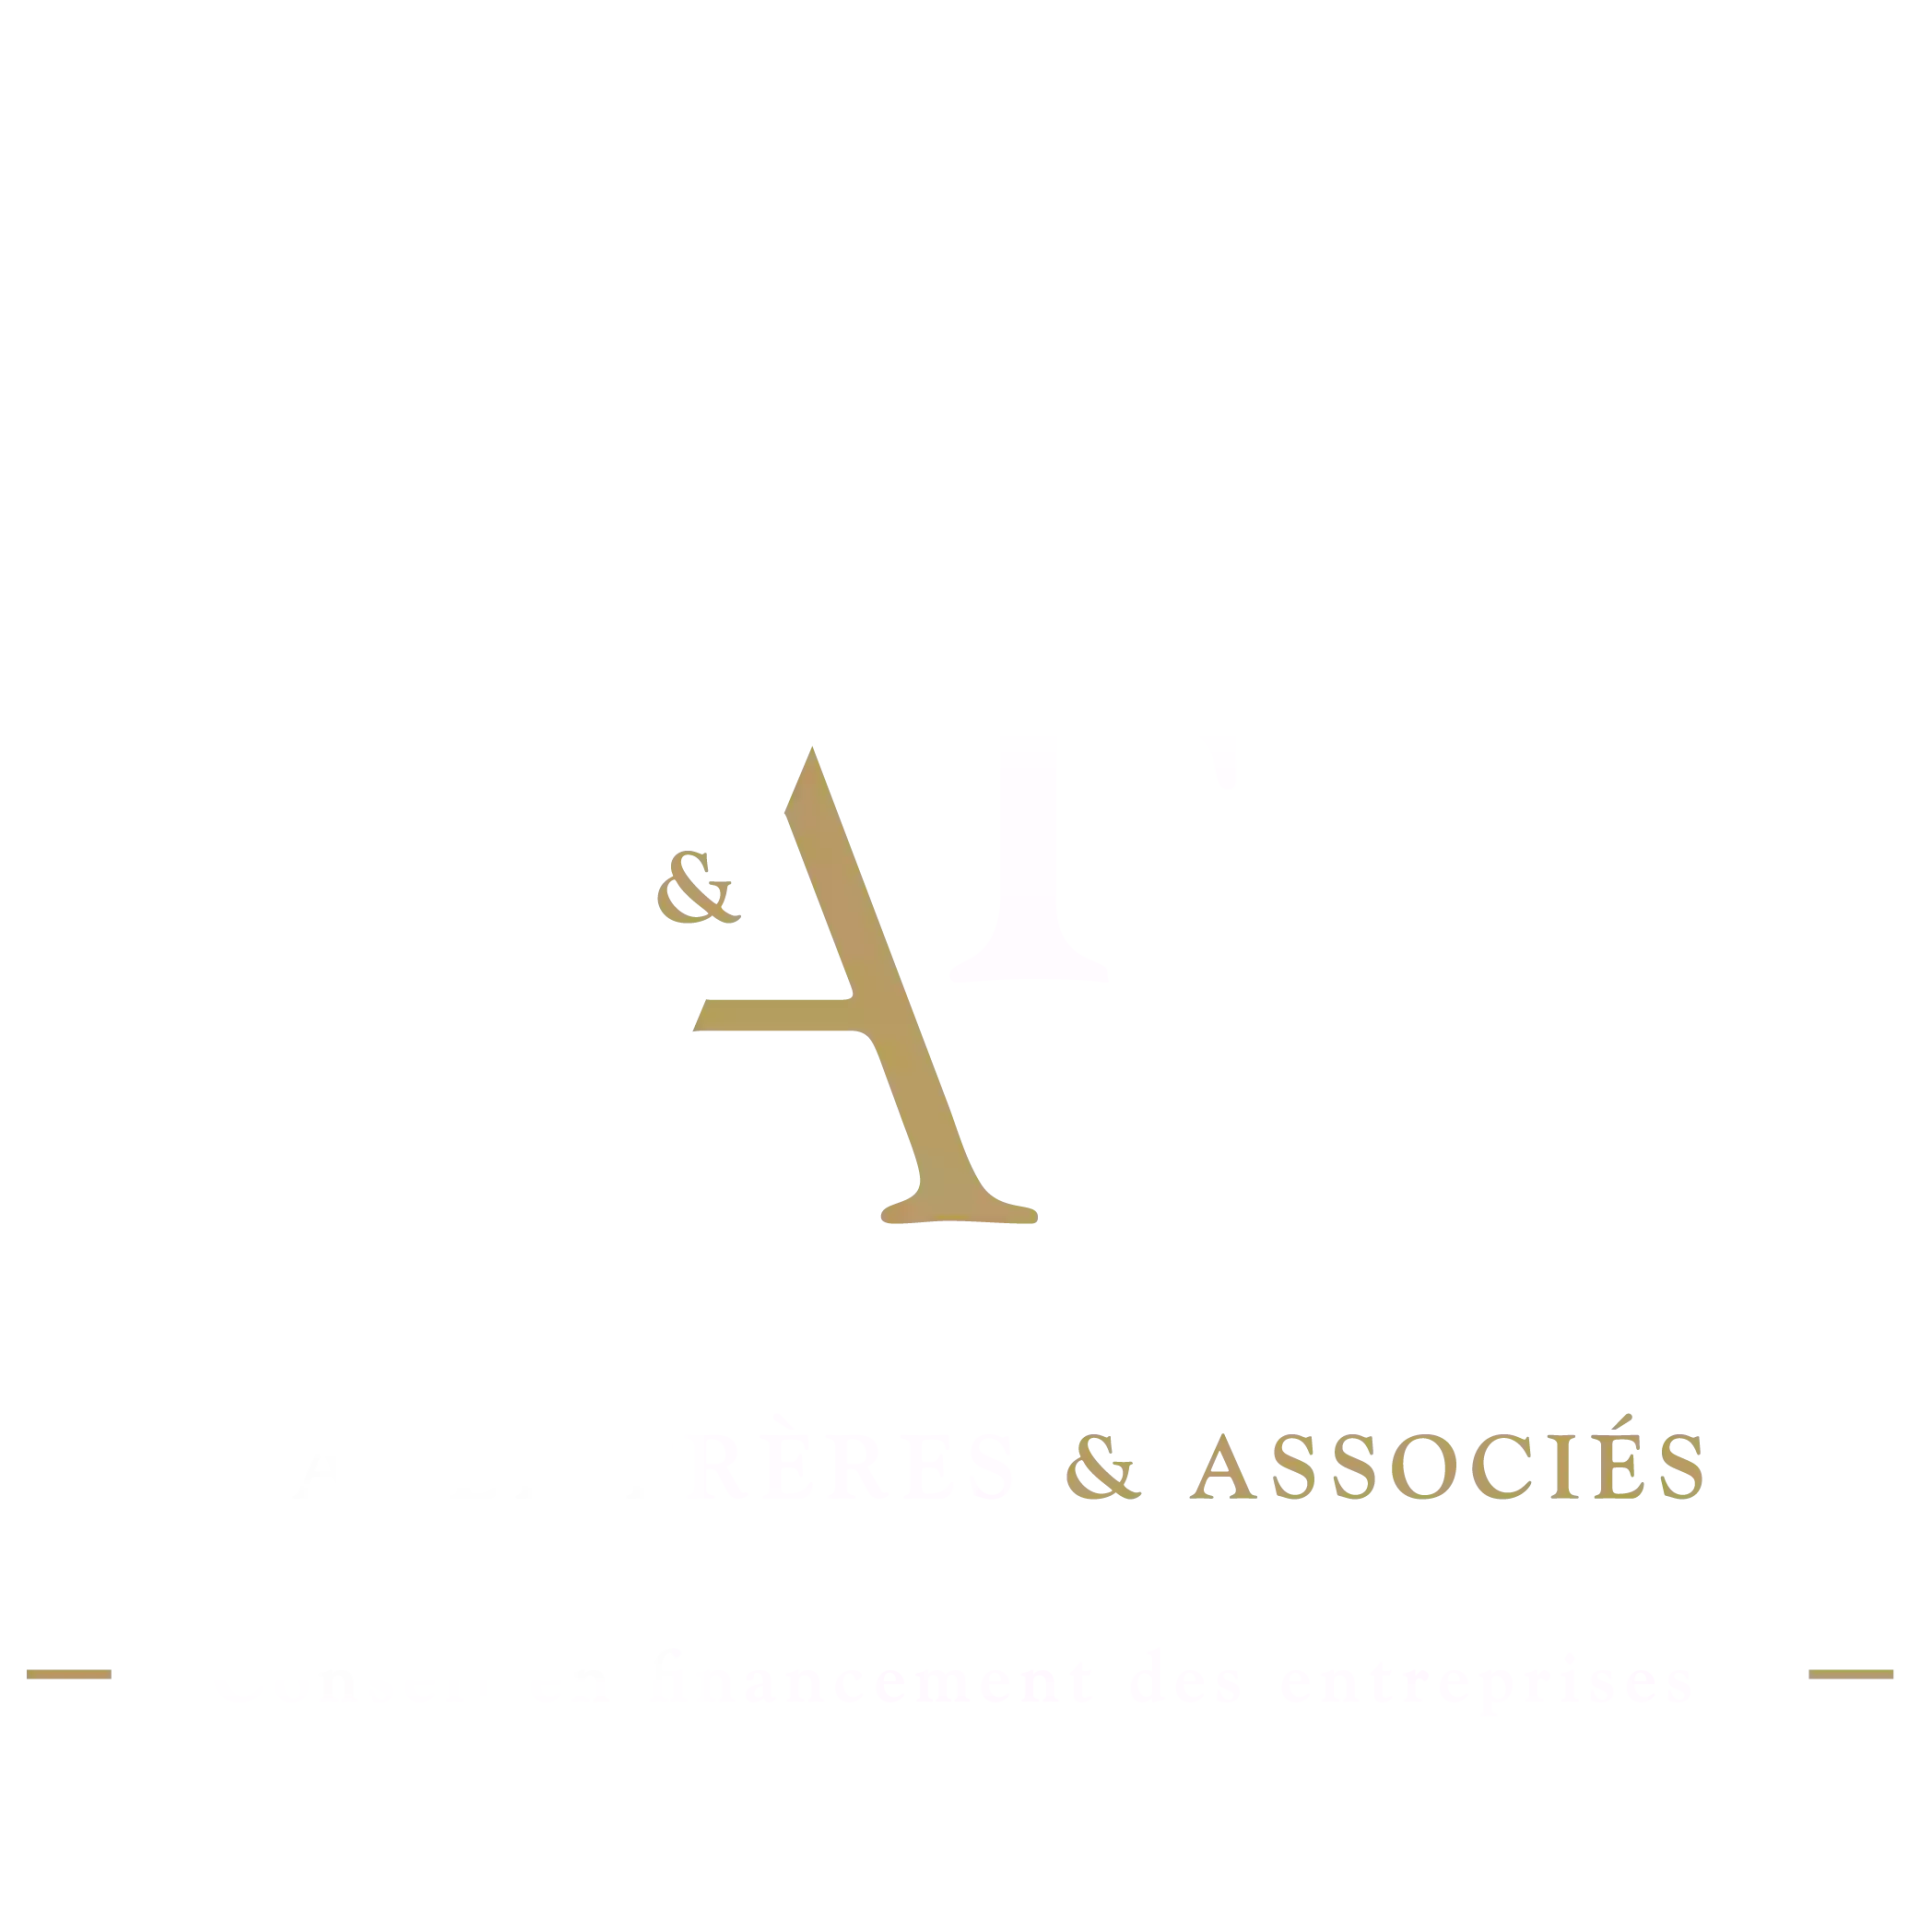 BAKER FRÈRES & ASSOCIÉS